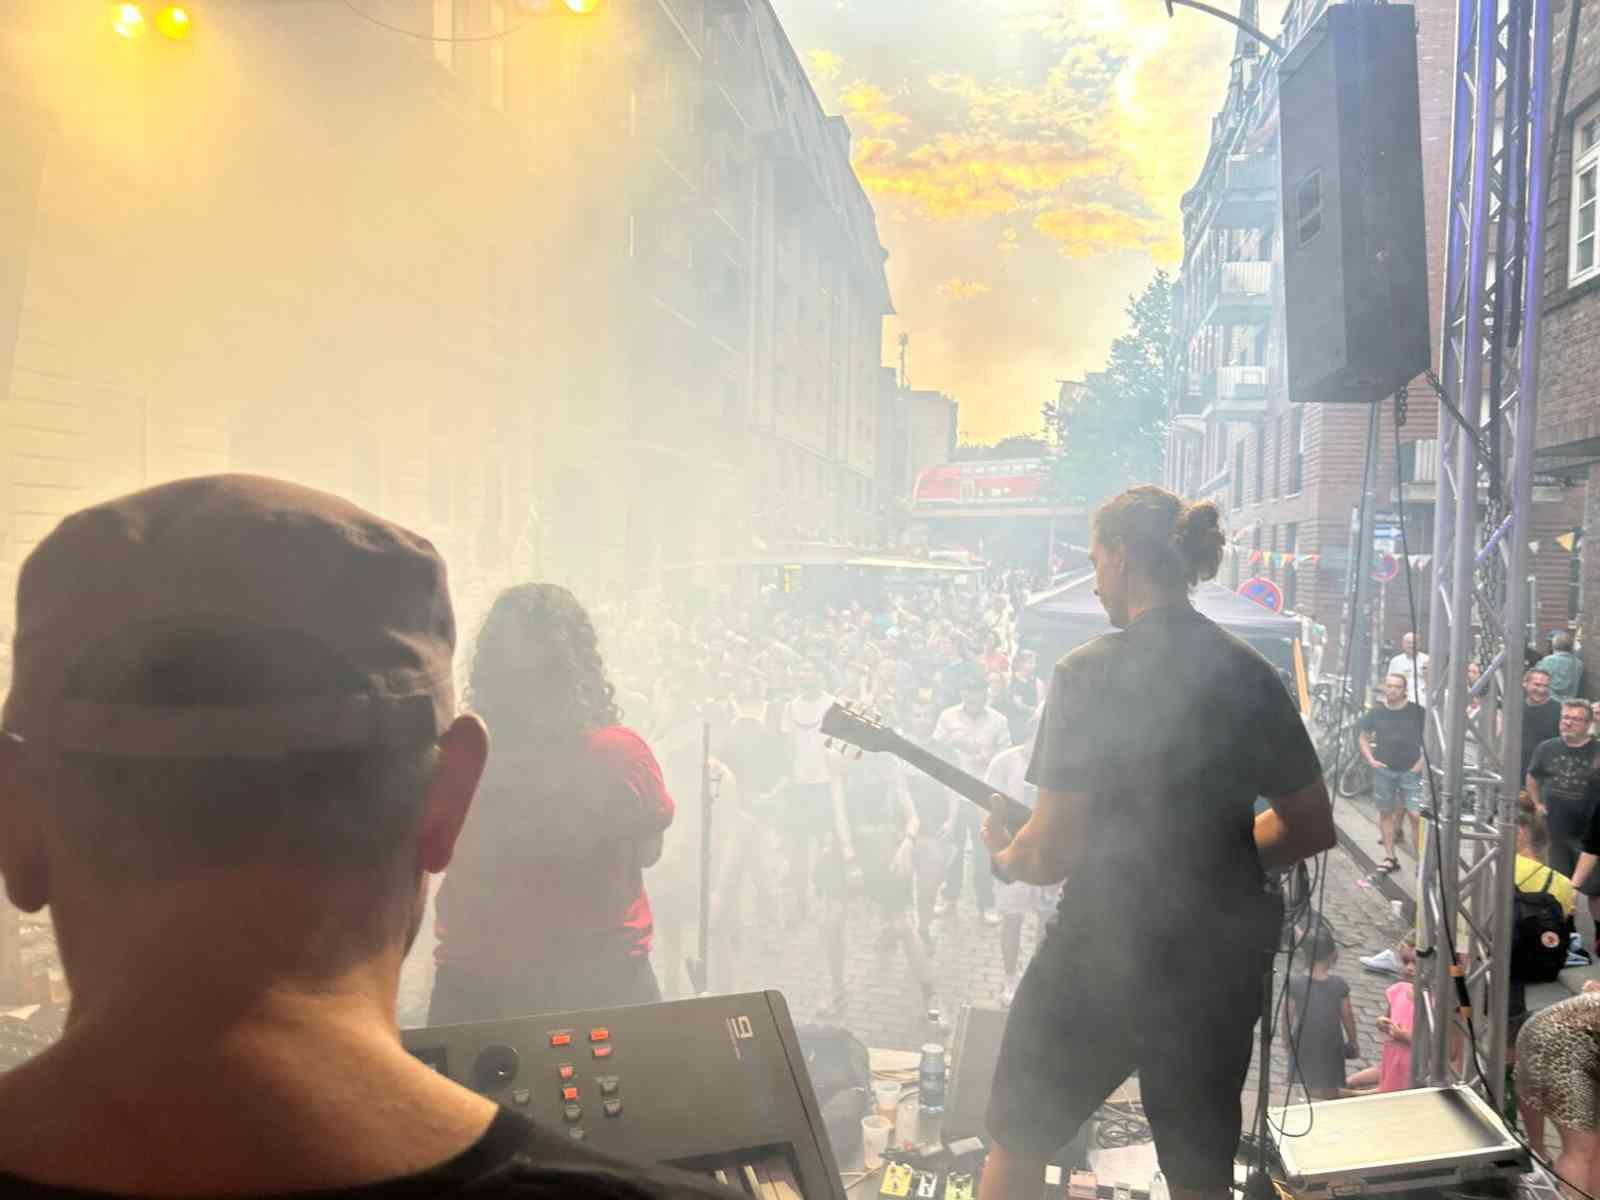 Band spielt im Sonnenuntergang im Nebel auf einer Bühne